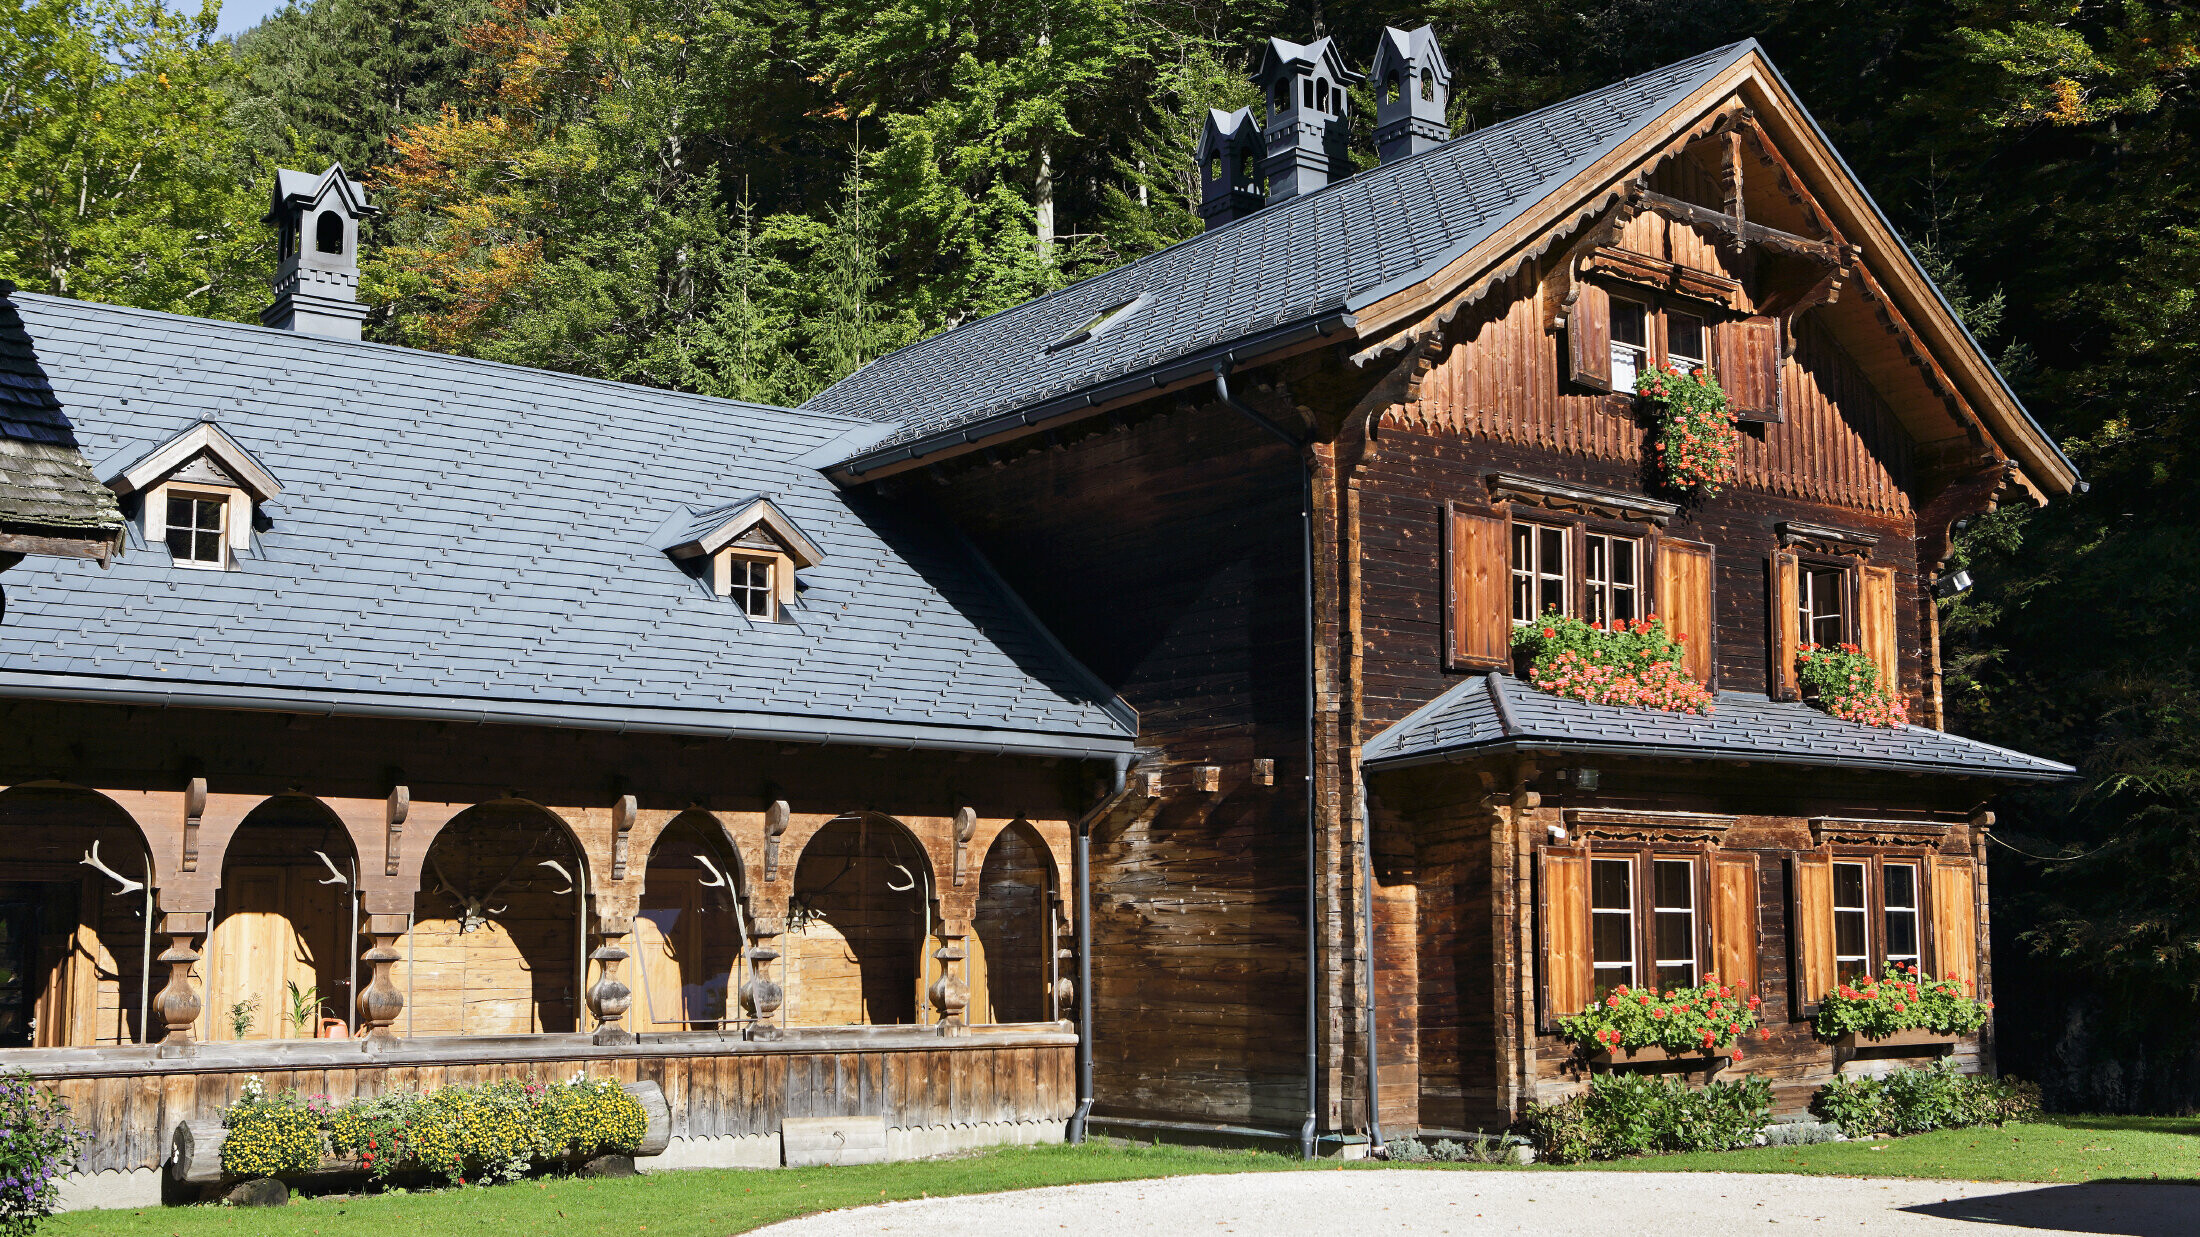 Rustiek jachthuis, Rothschildhaus, gerenoveerd met PREFA dakschindels in P.10 antraciet